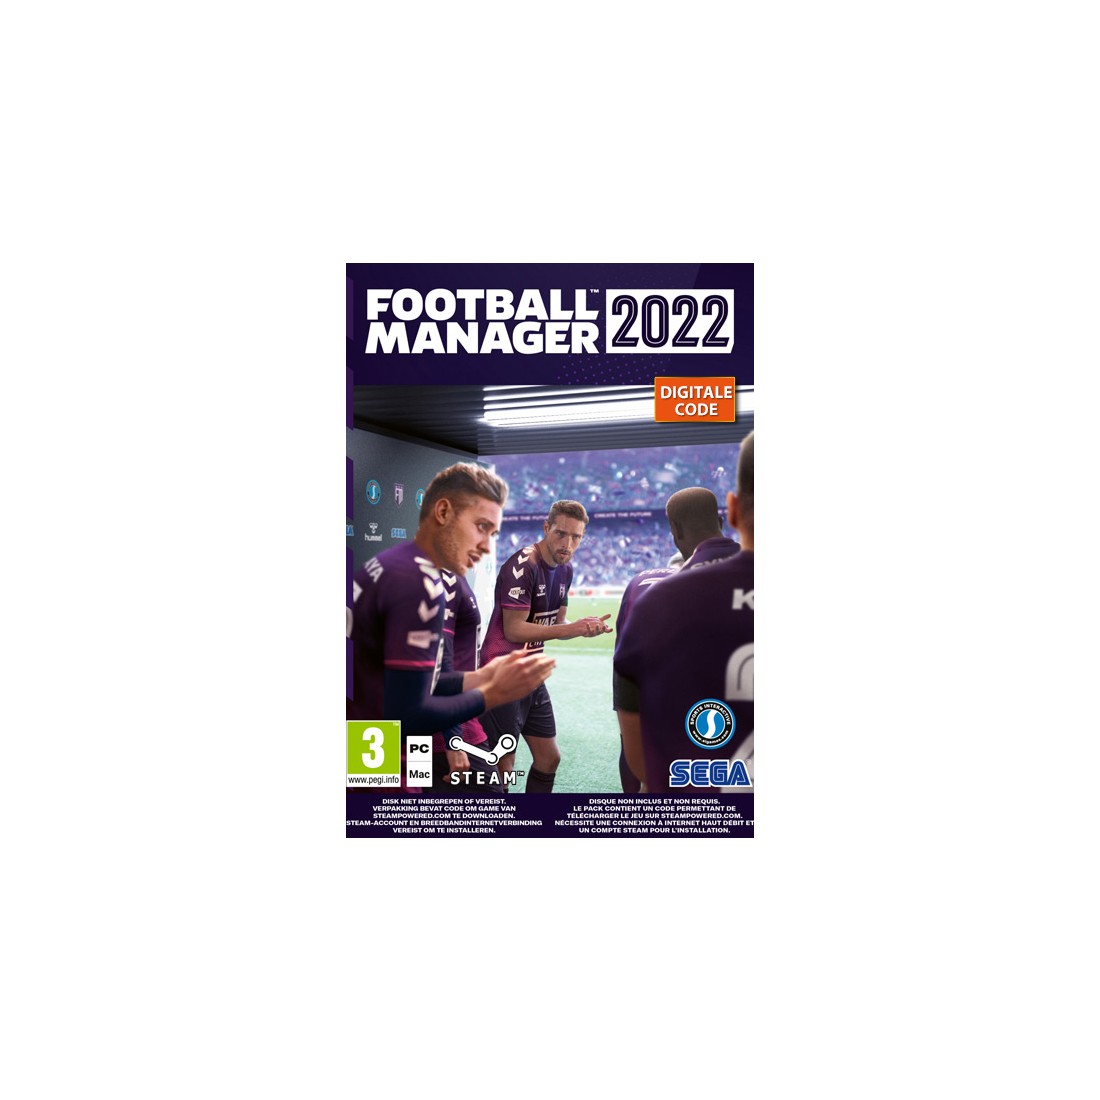 Football Manager 2022/FM 2022 Steam PC/MAC nu direct uit voorraad leverbaar! (Inc. Beta)